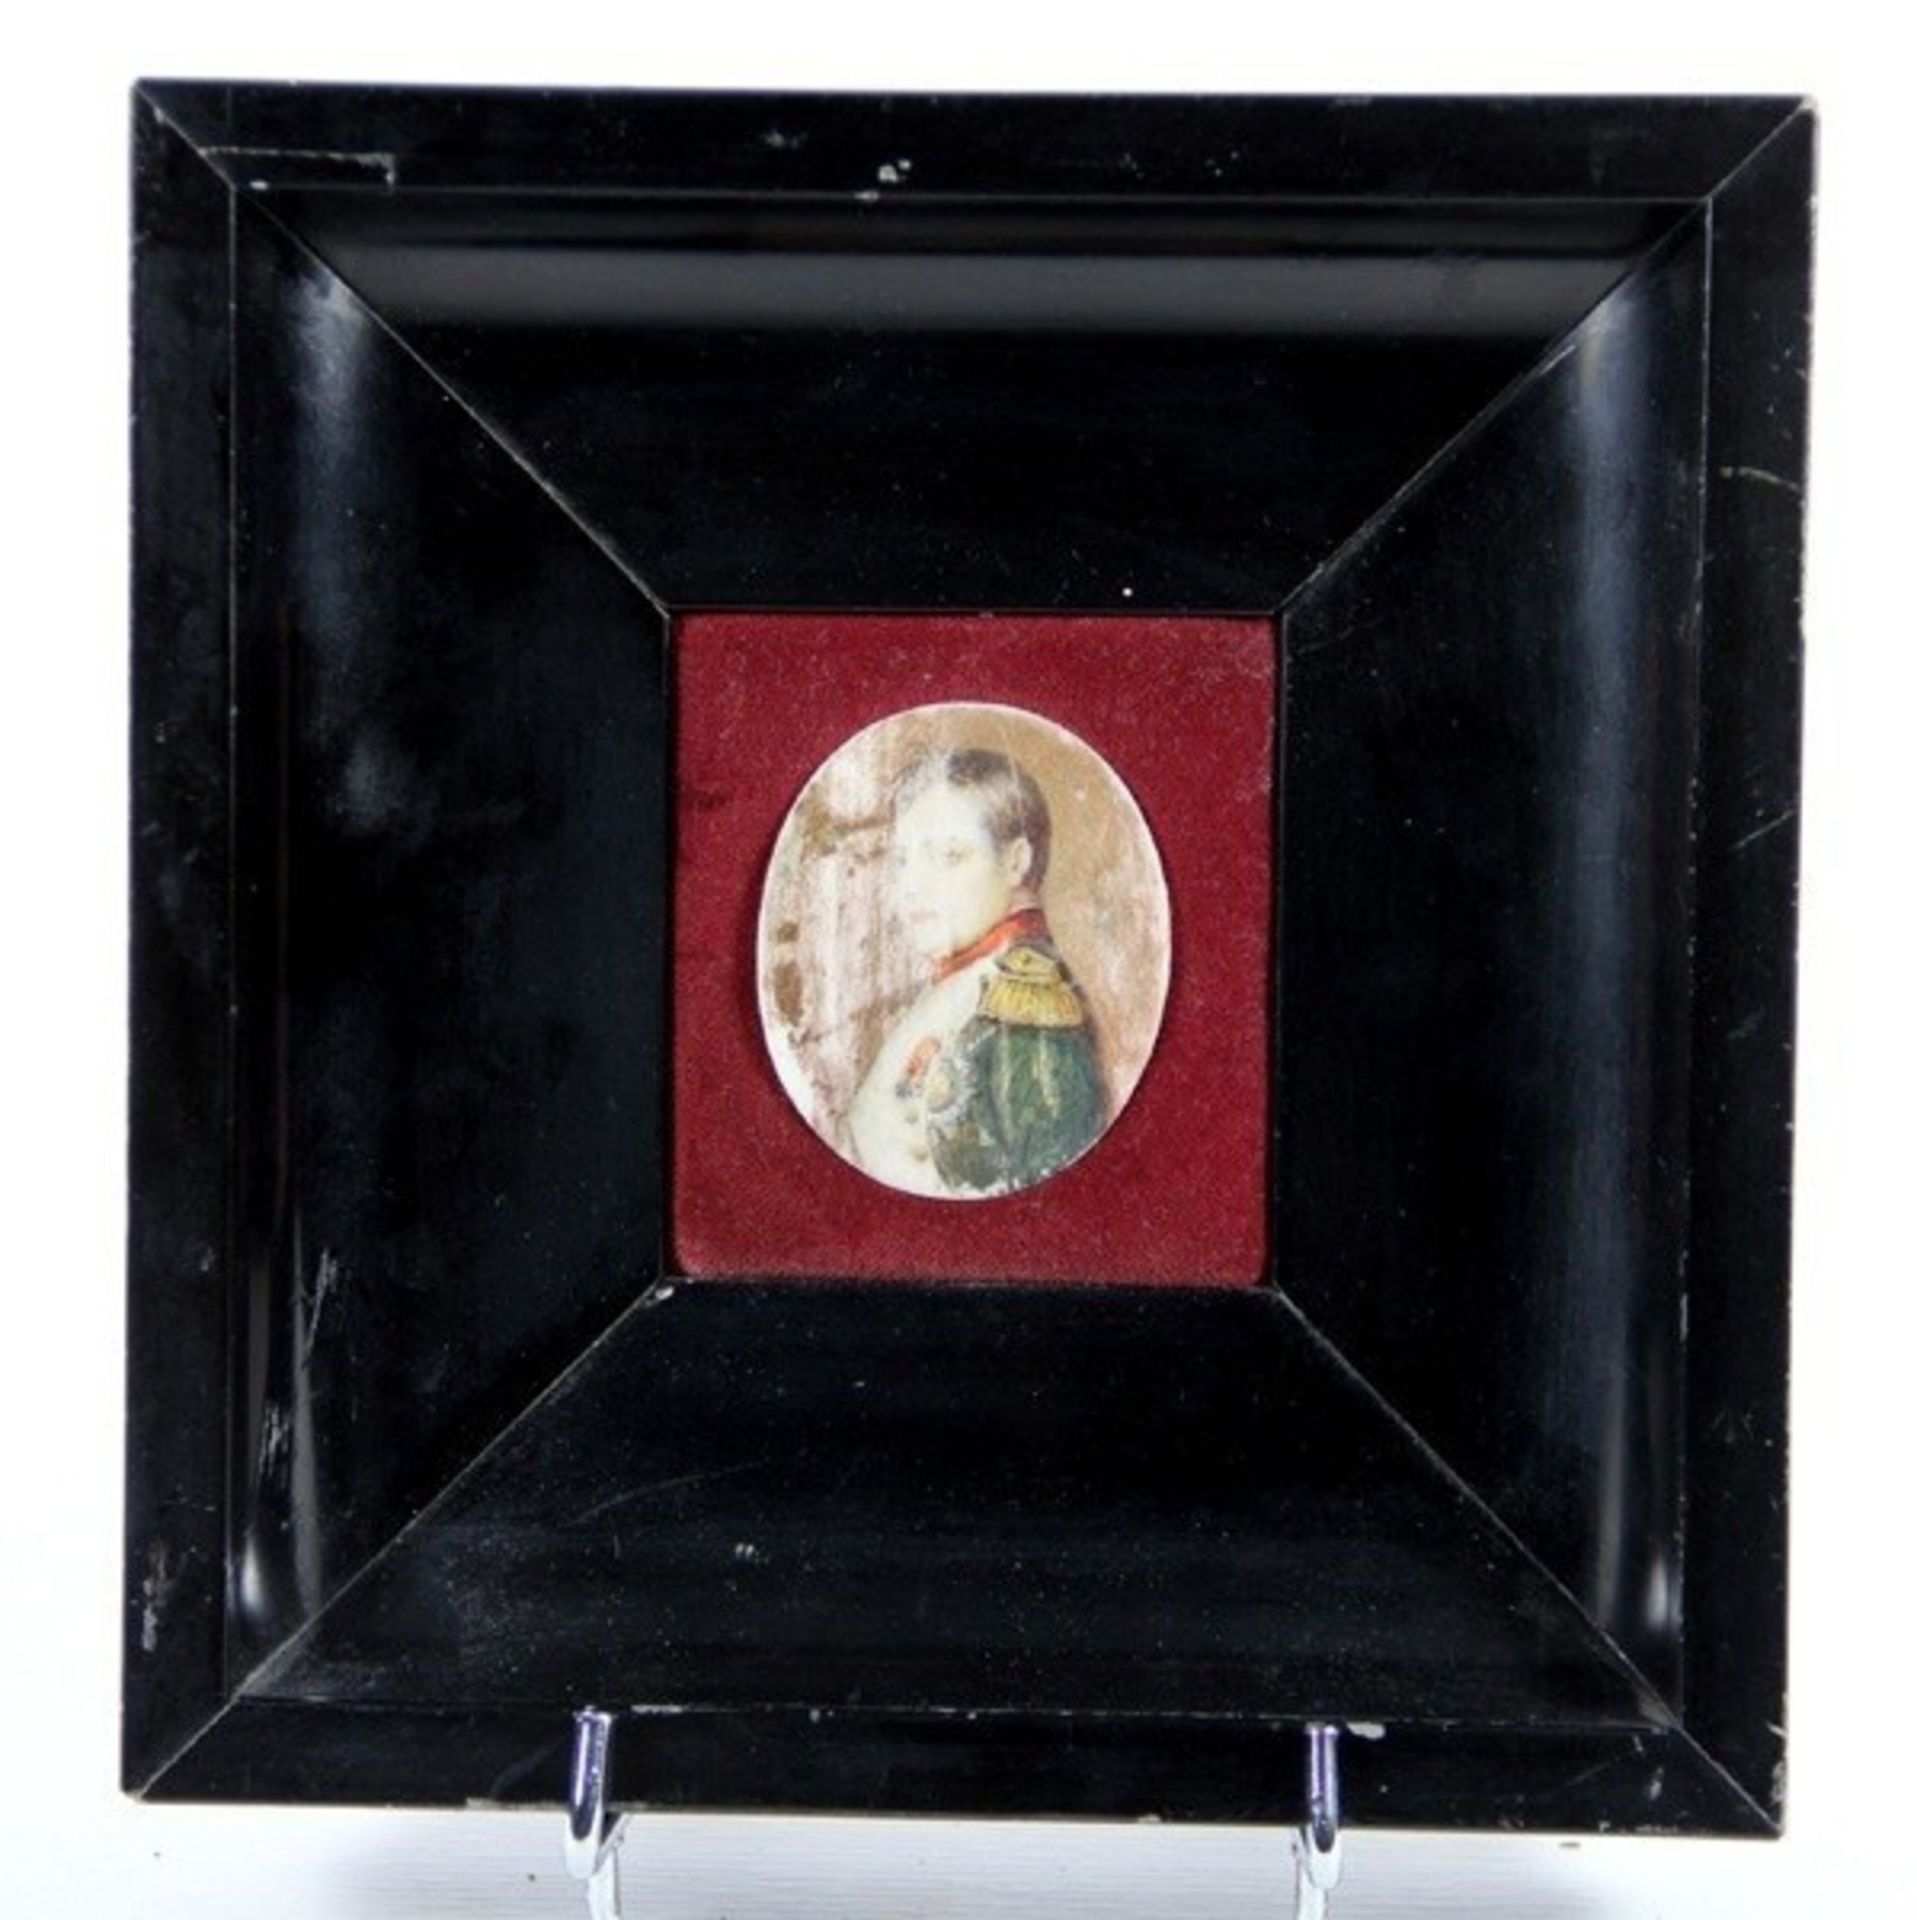 Miniatur Napoleon19. Jhd., ovale Portraitdarstellung Napoleons, wohl Elfenbein, stark berieben, H.